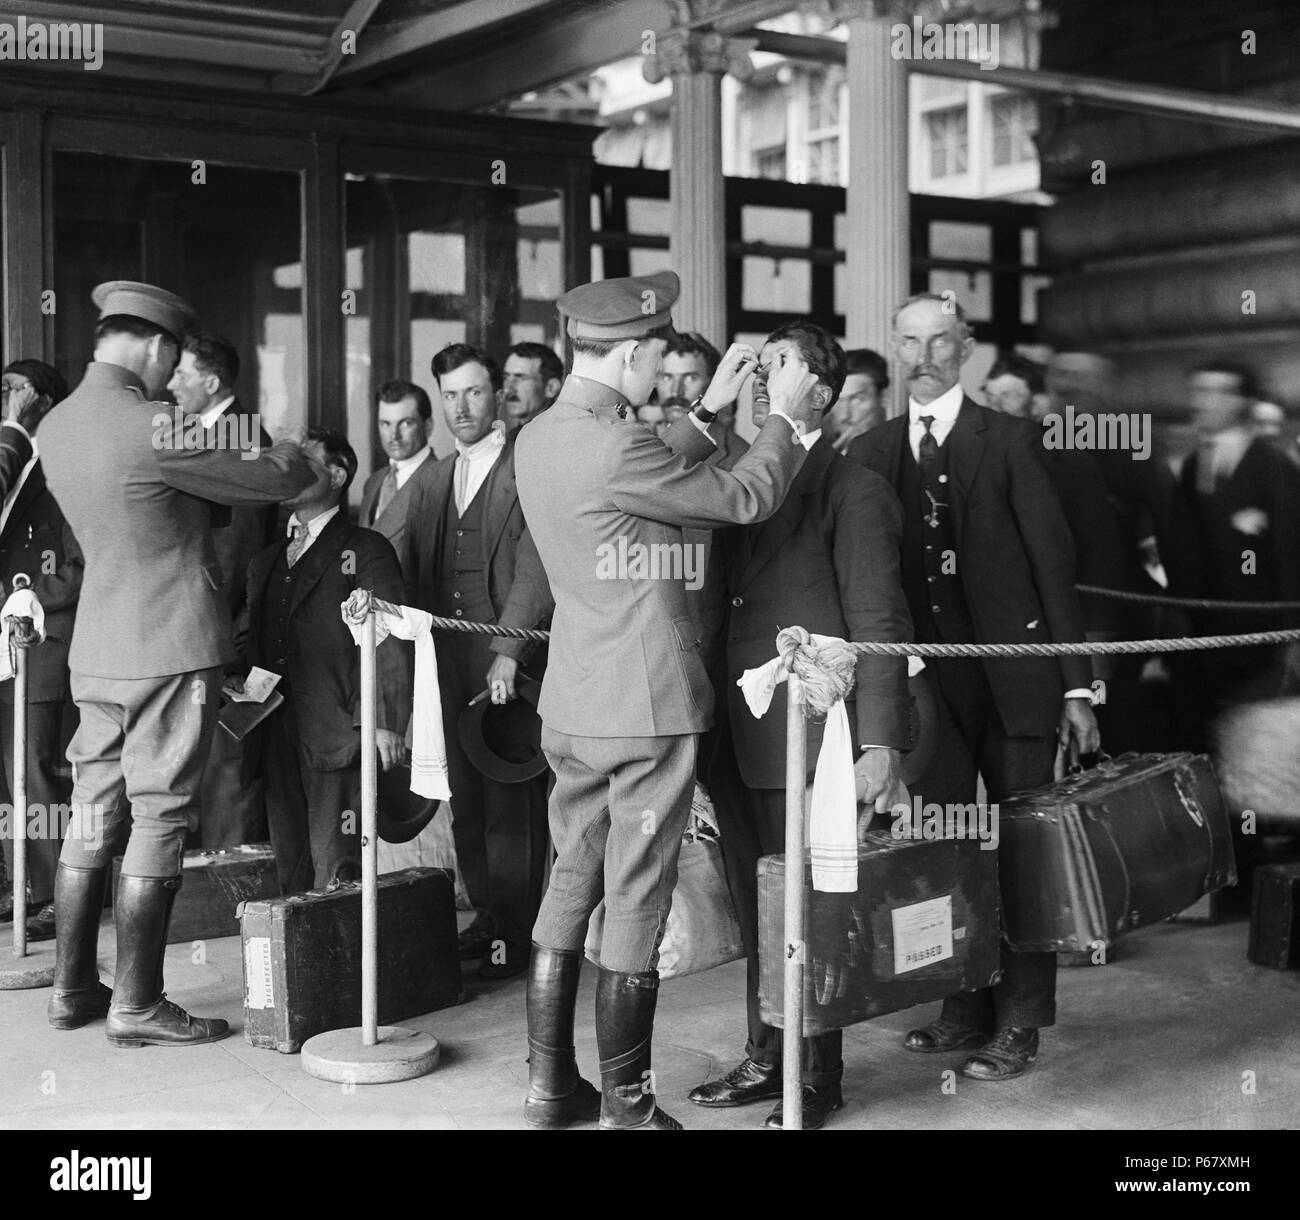 Bild zeigt ein Kontrollbesuch statt für neue Einwanderer die Einreise in die Vereinigten Staaten. Foto auf Ellis Island, New York, 1920. Stockfoto